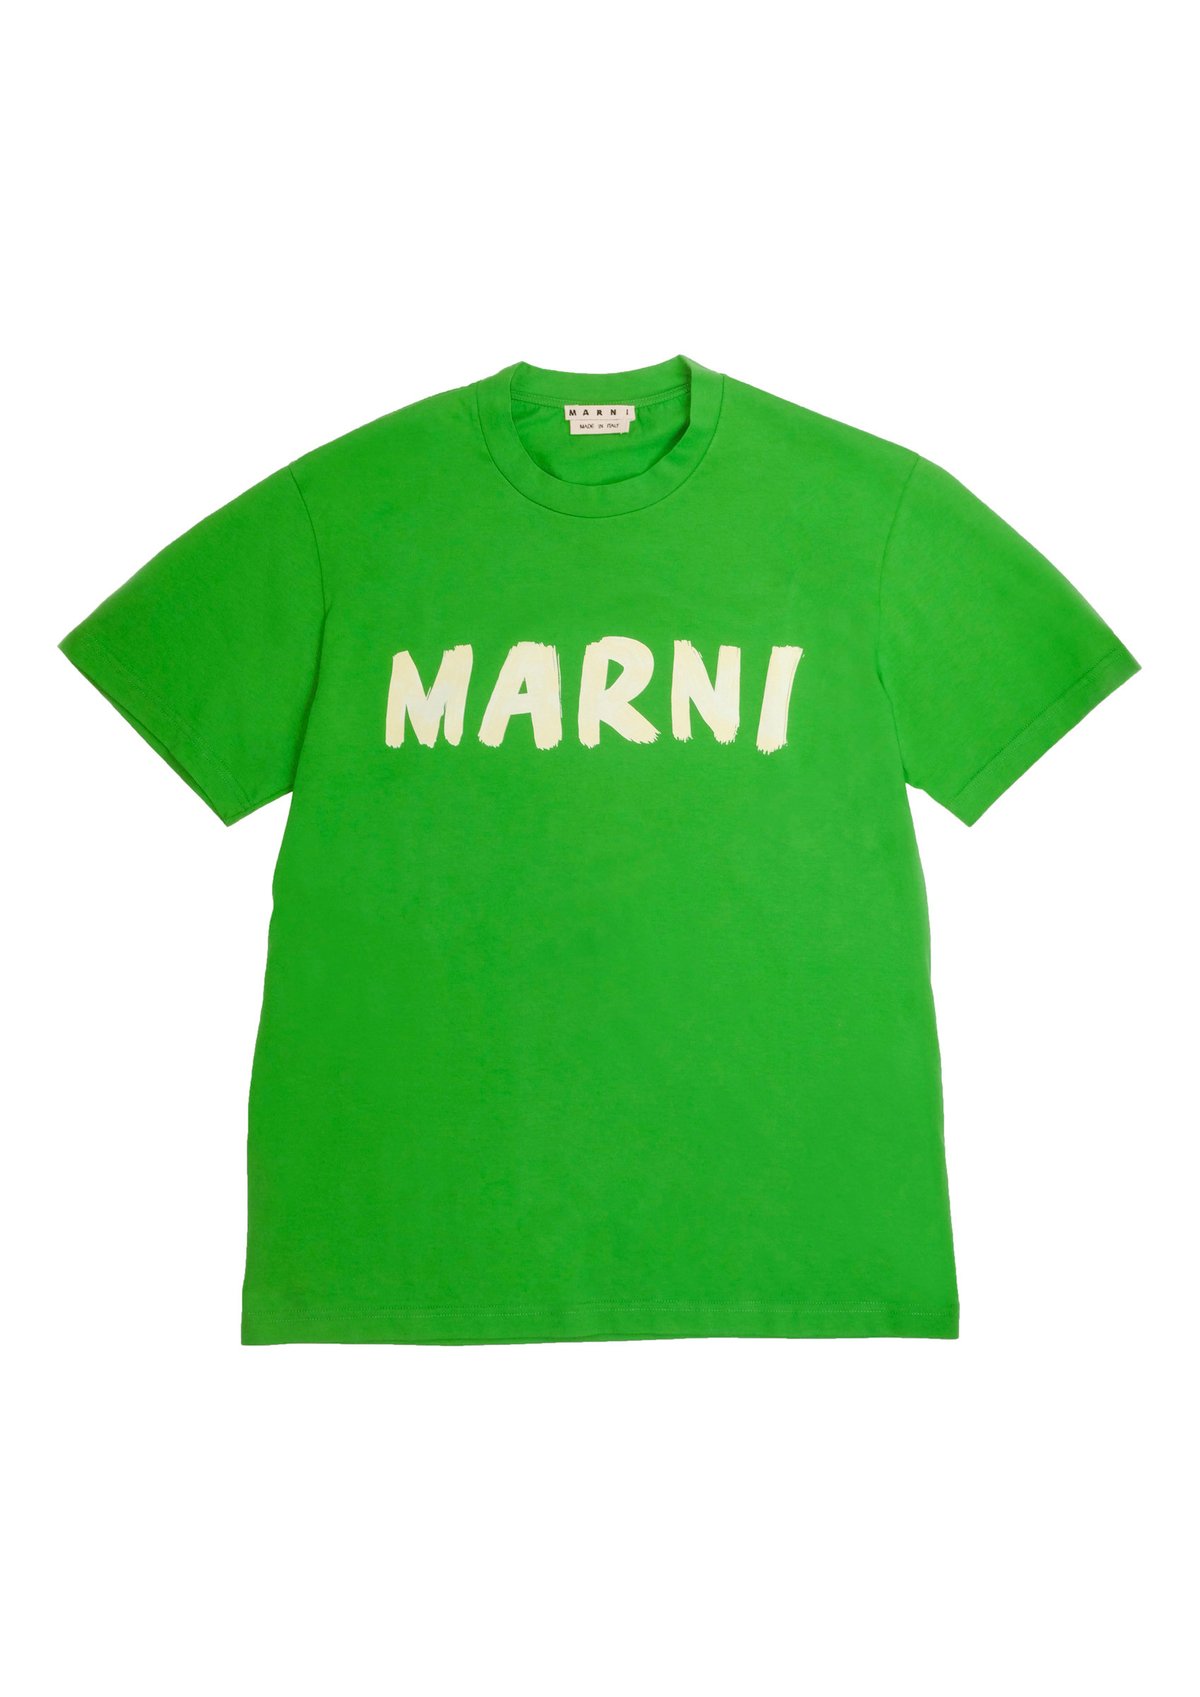 マルニが日本限定アイテム発売、ハンドペイントの「MARNI」ロゴ